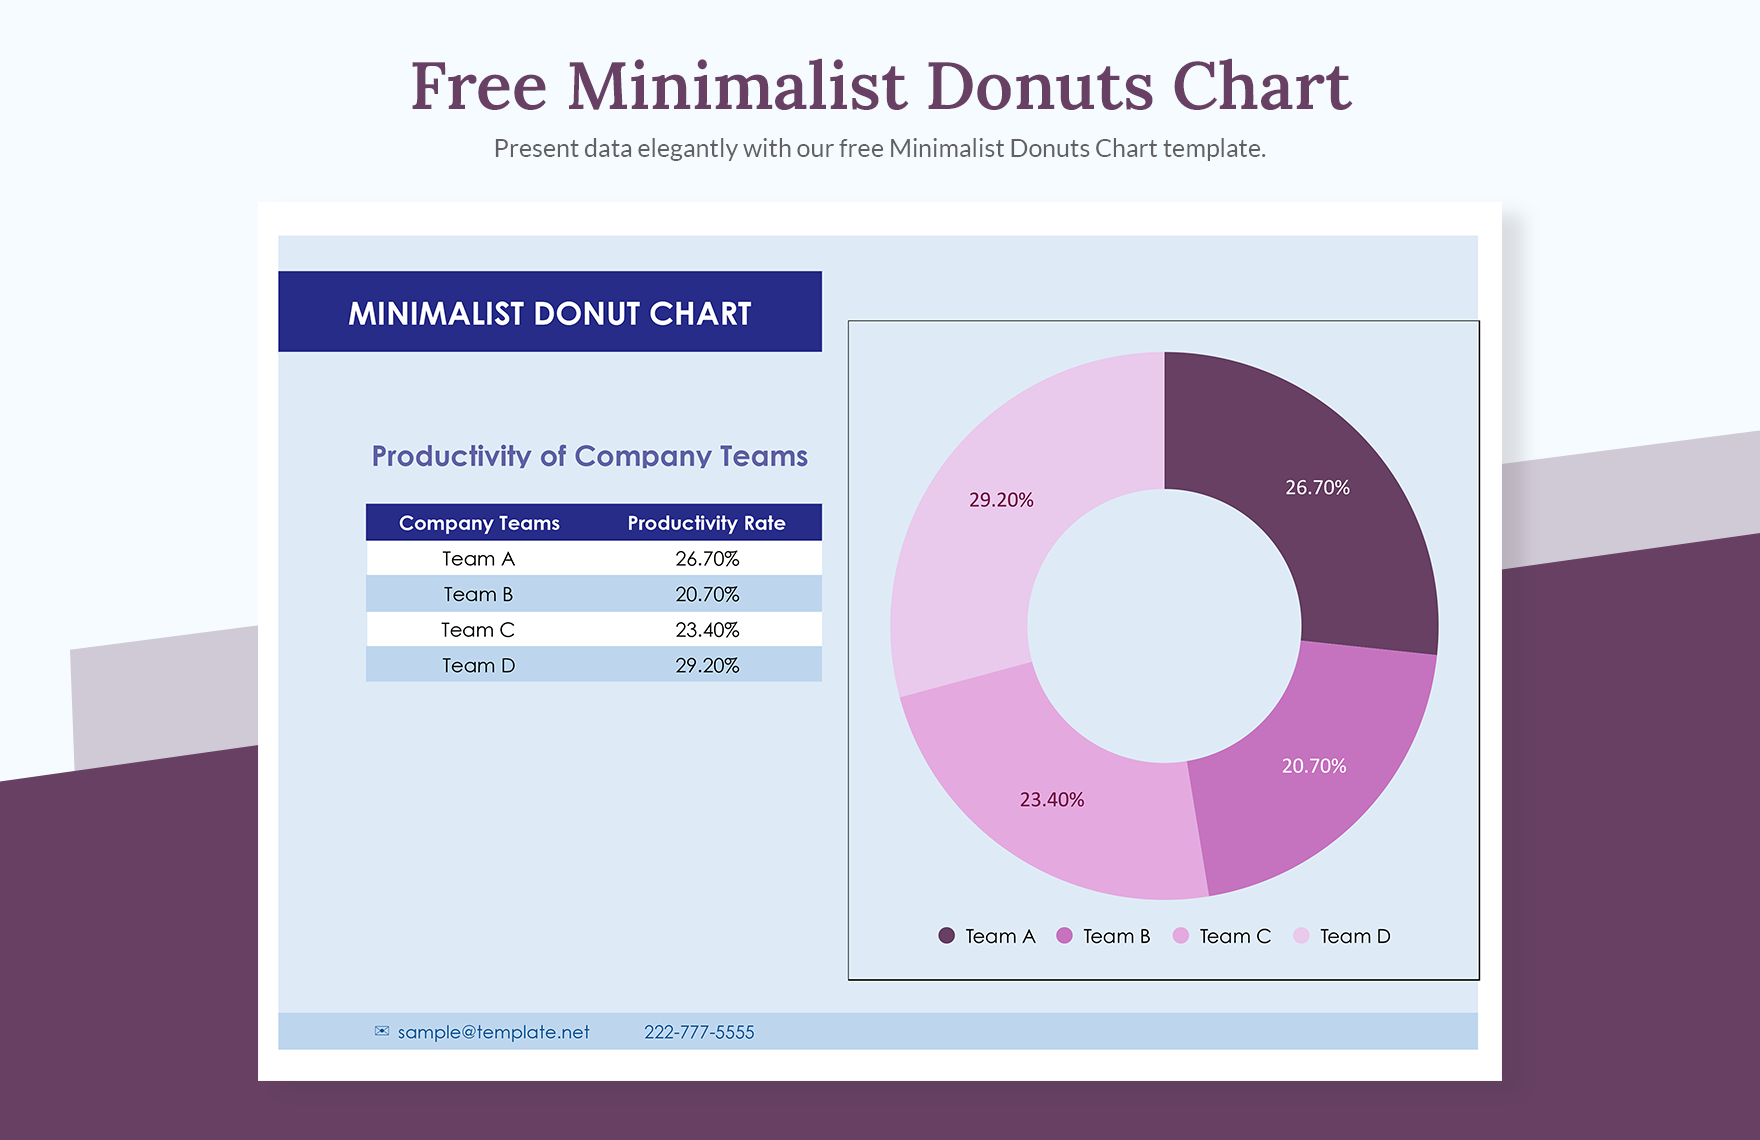 Free Minimalist Donuts Chart